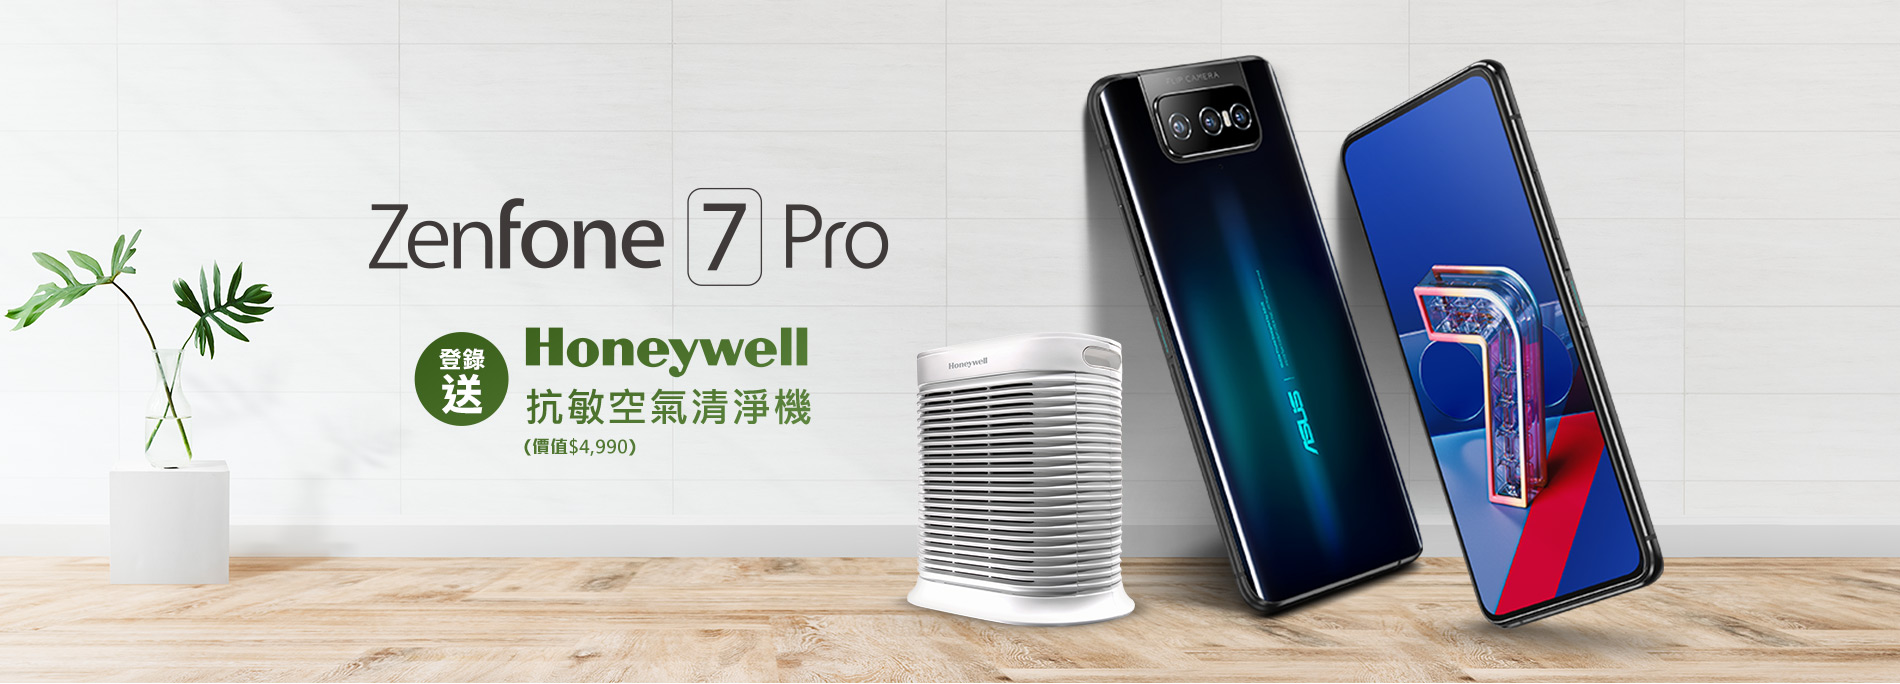 【全通路】買 ZenFone 7 Pro 登錄送 Honeywell 抗敏空氣清淨機